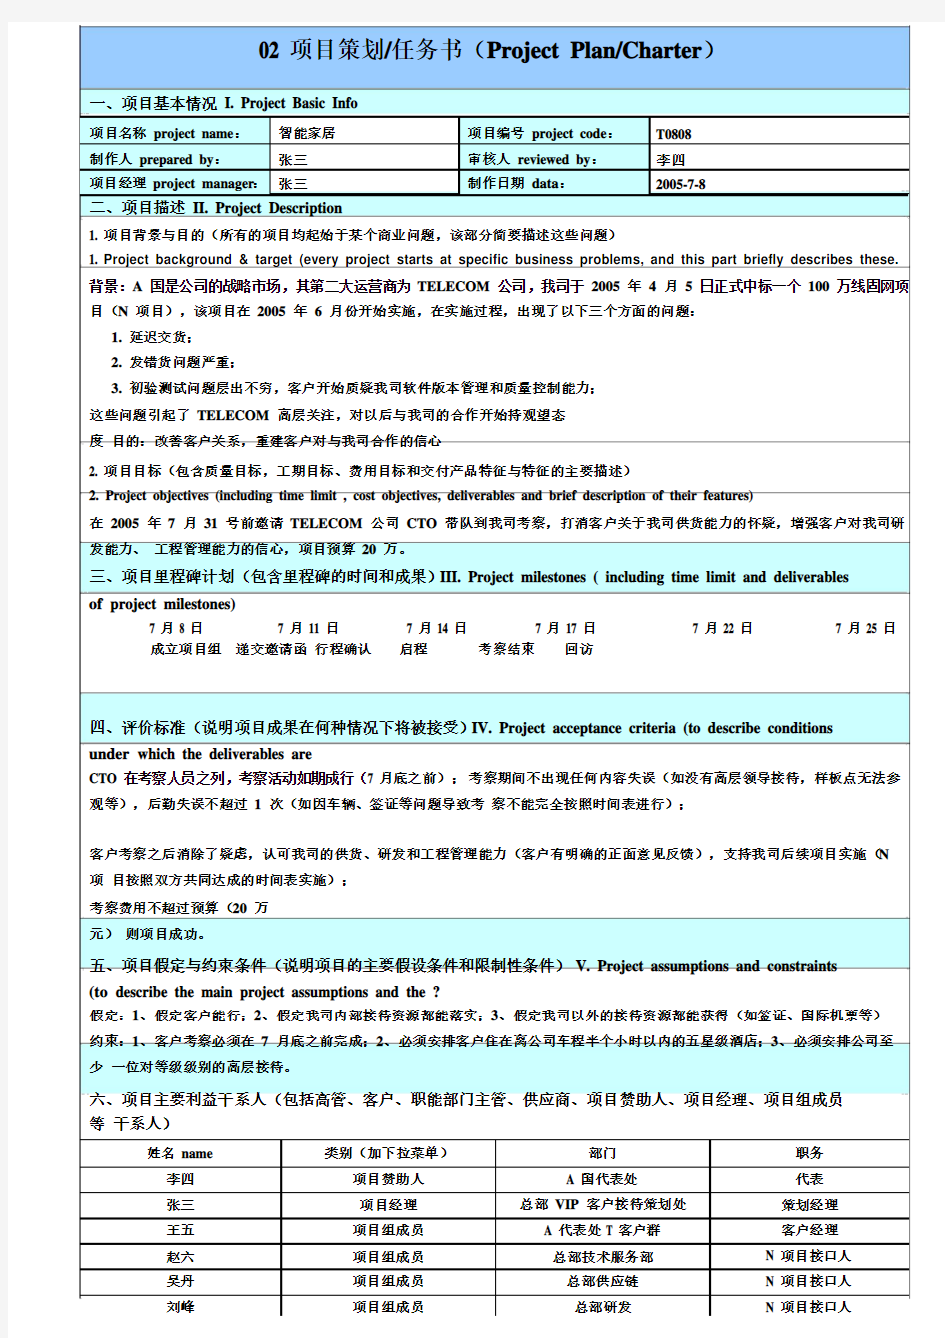 华为项目管理10大模板(可直接套用).pdf